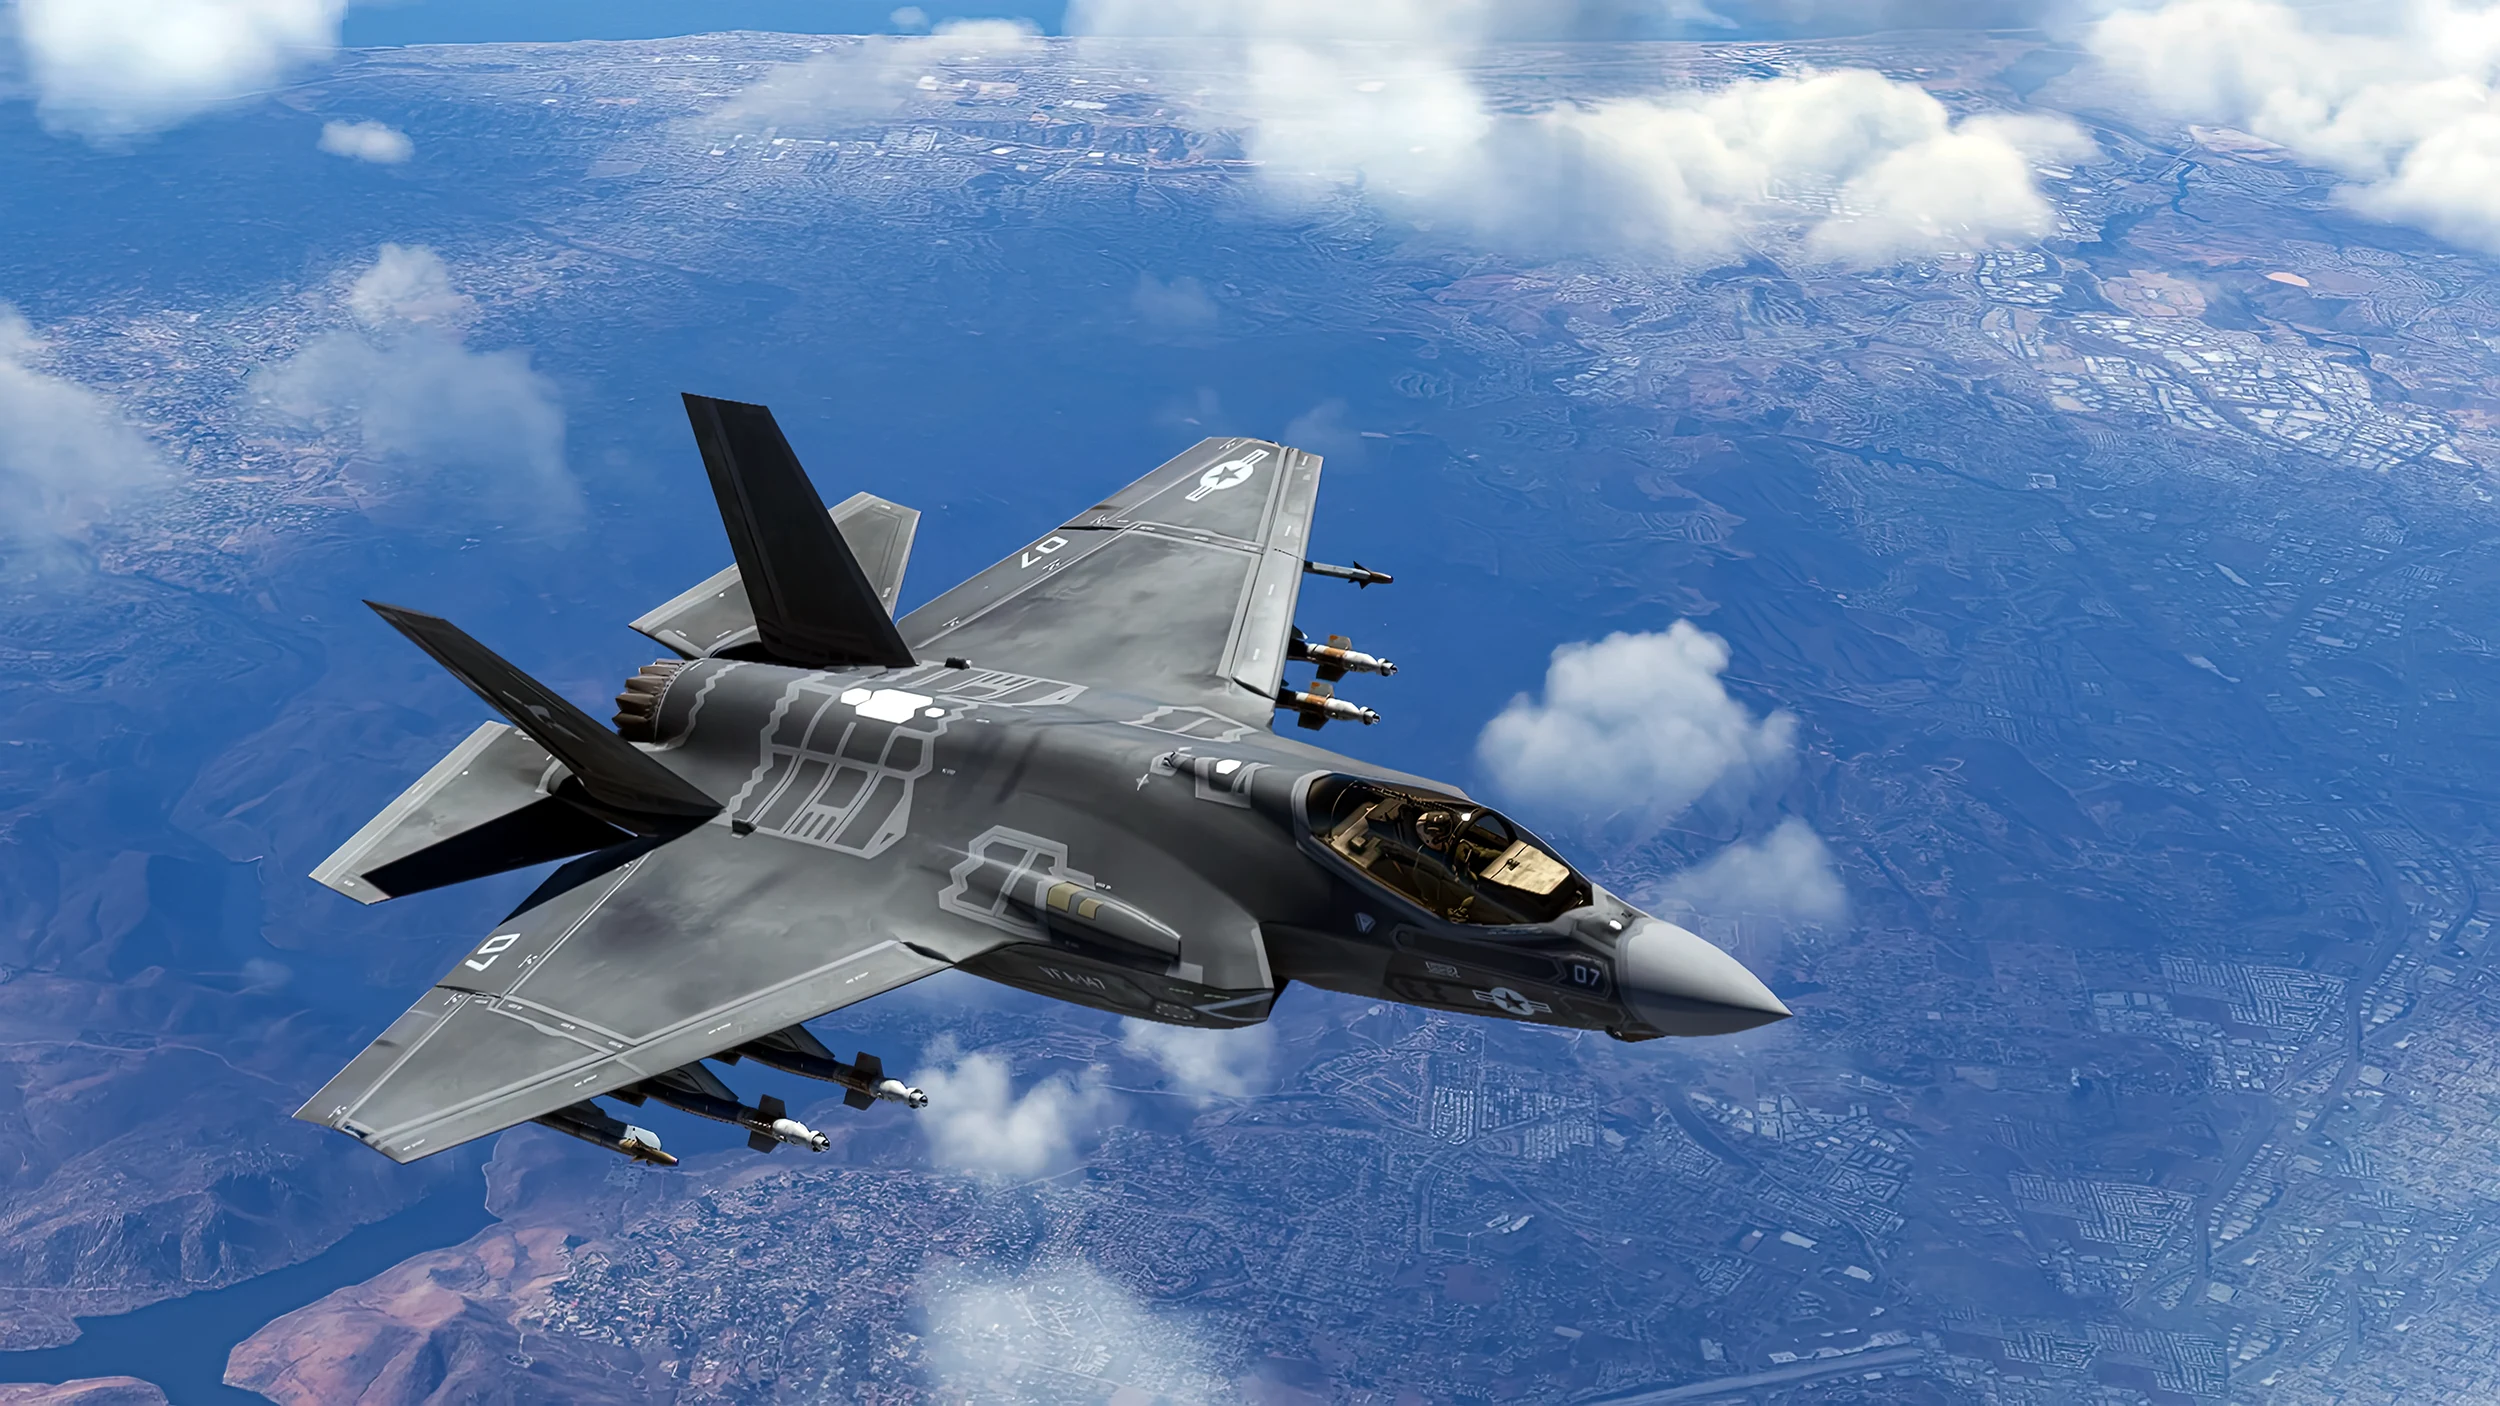 ¿Por qué Grecia recibe el caza F-35 y Turquía los F-16?